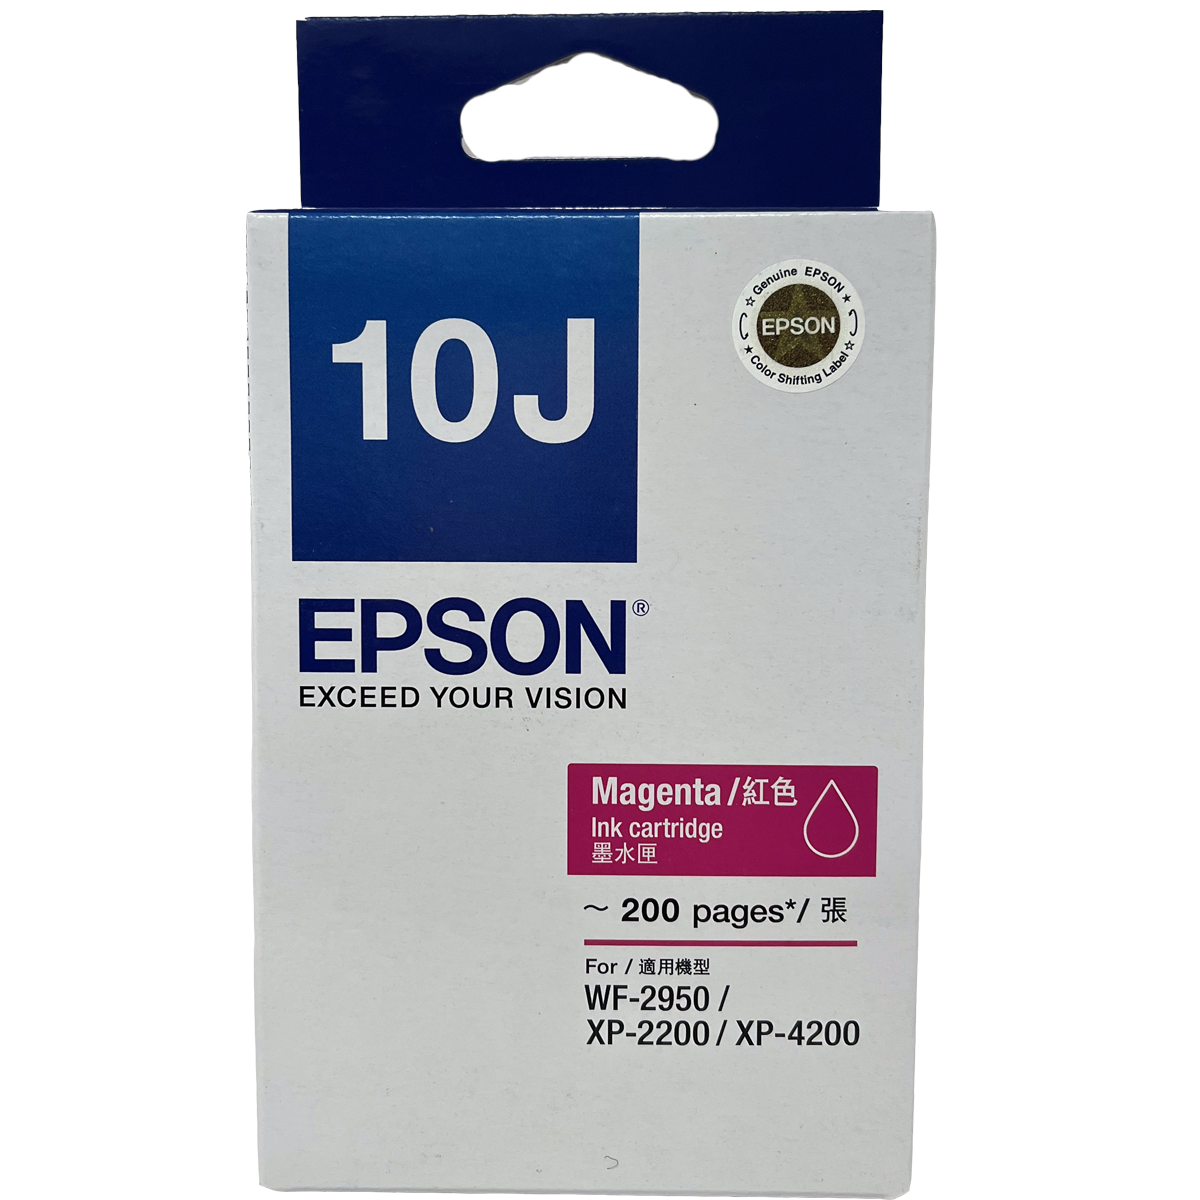 Epson 10J Magenta Ink Cartridge 洋紅色墨水匣 #C13T10J383